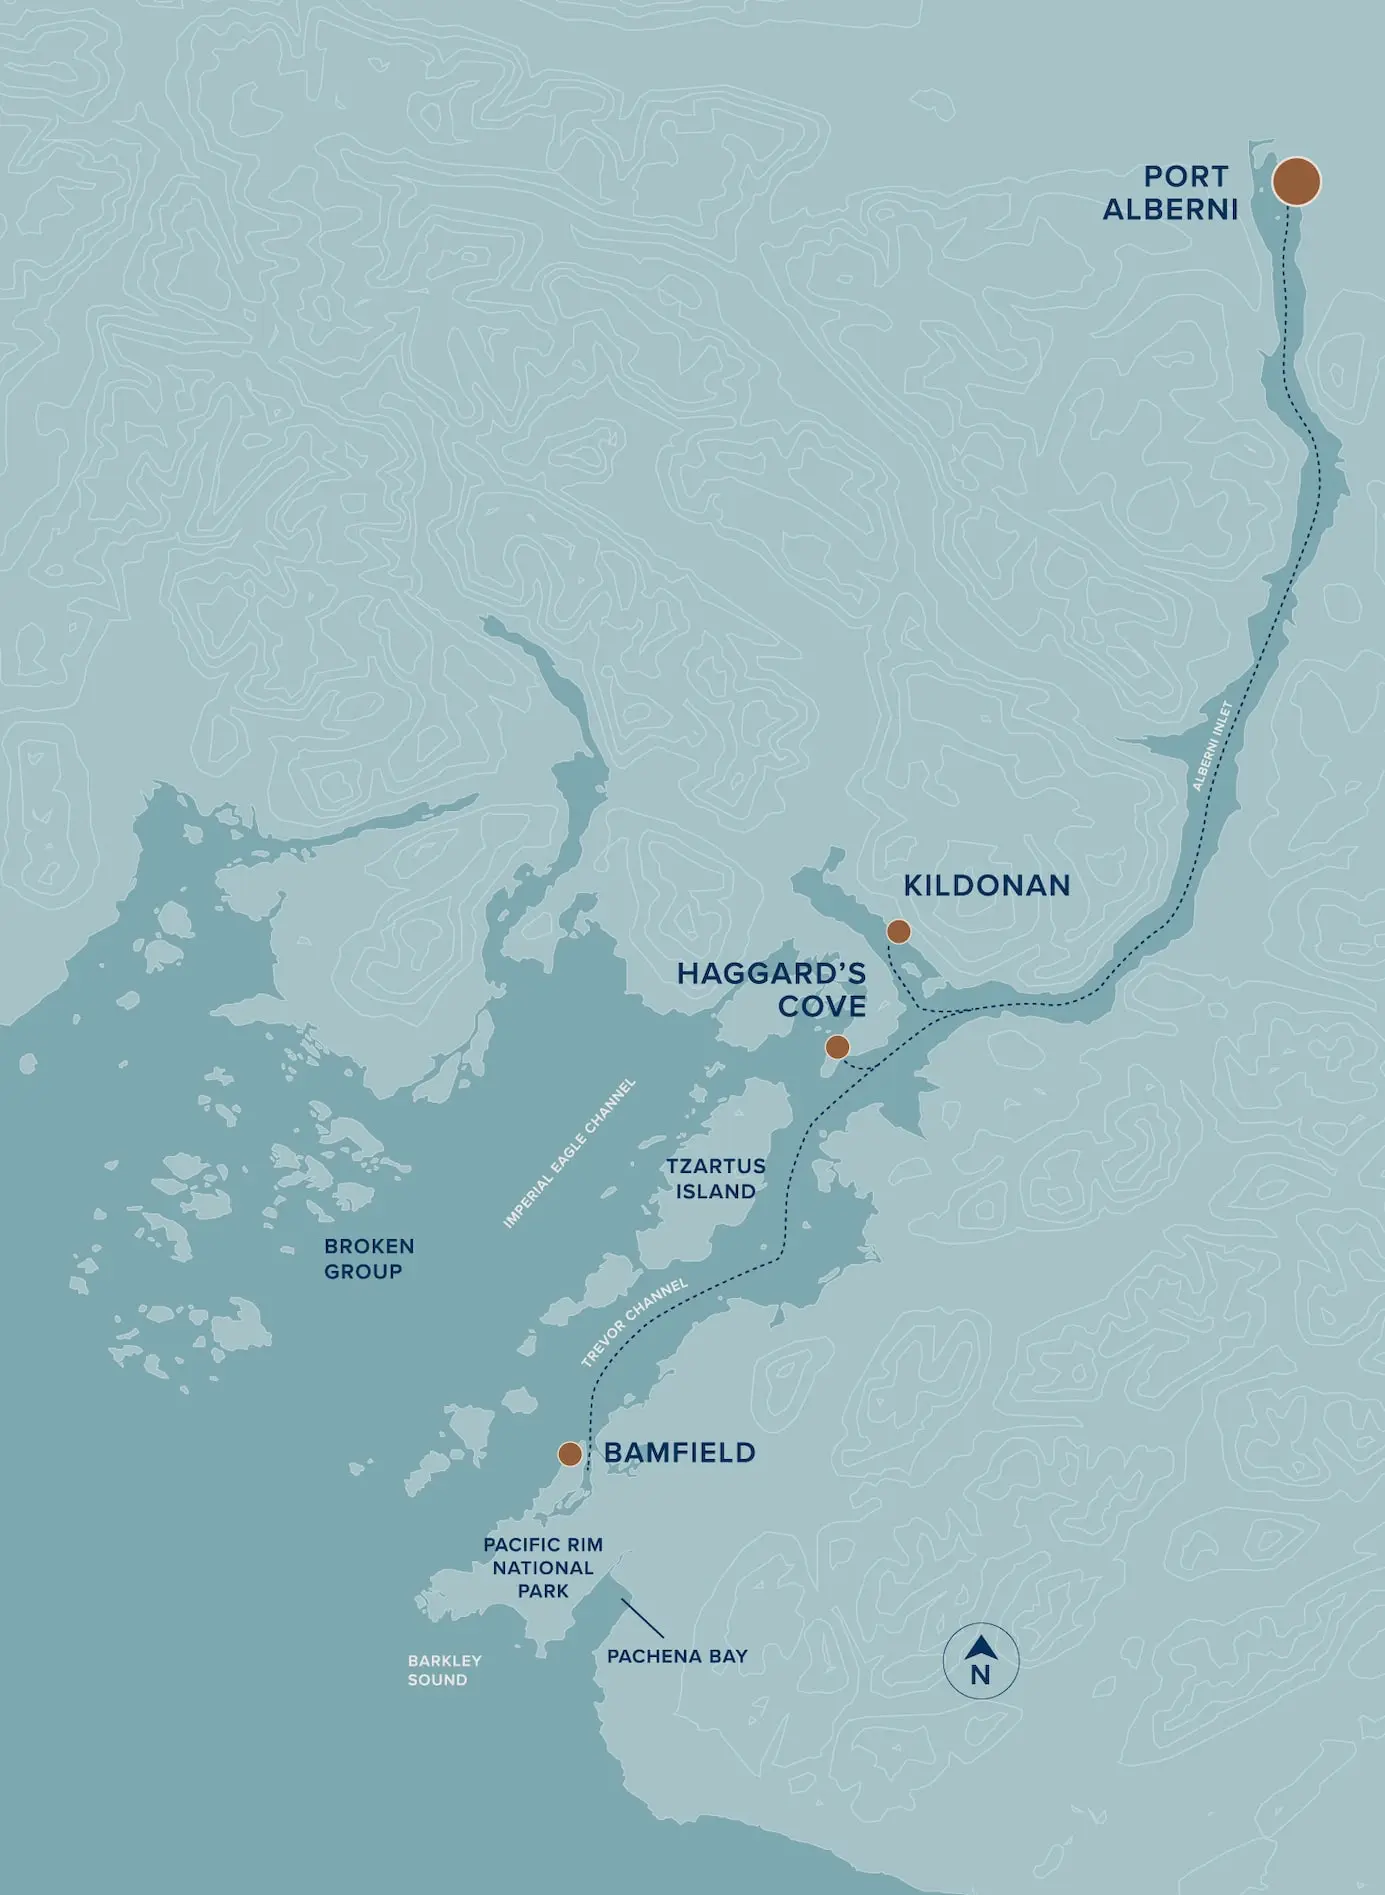 Map of Port Alberni area